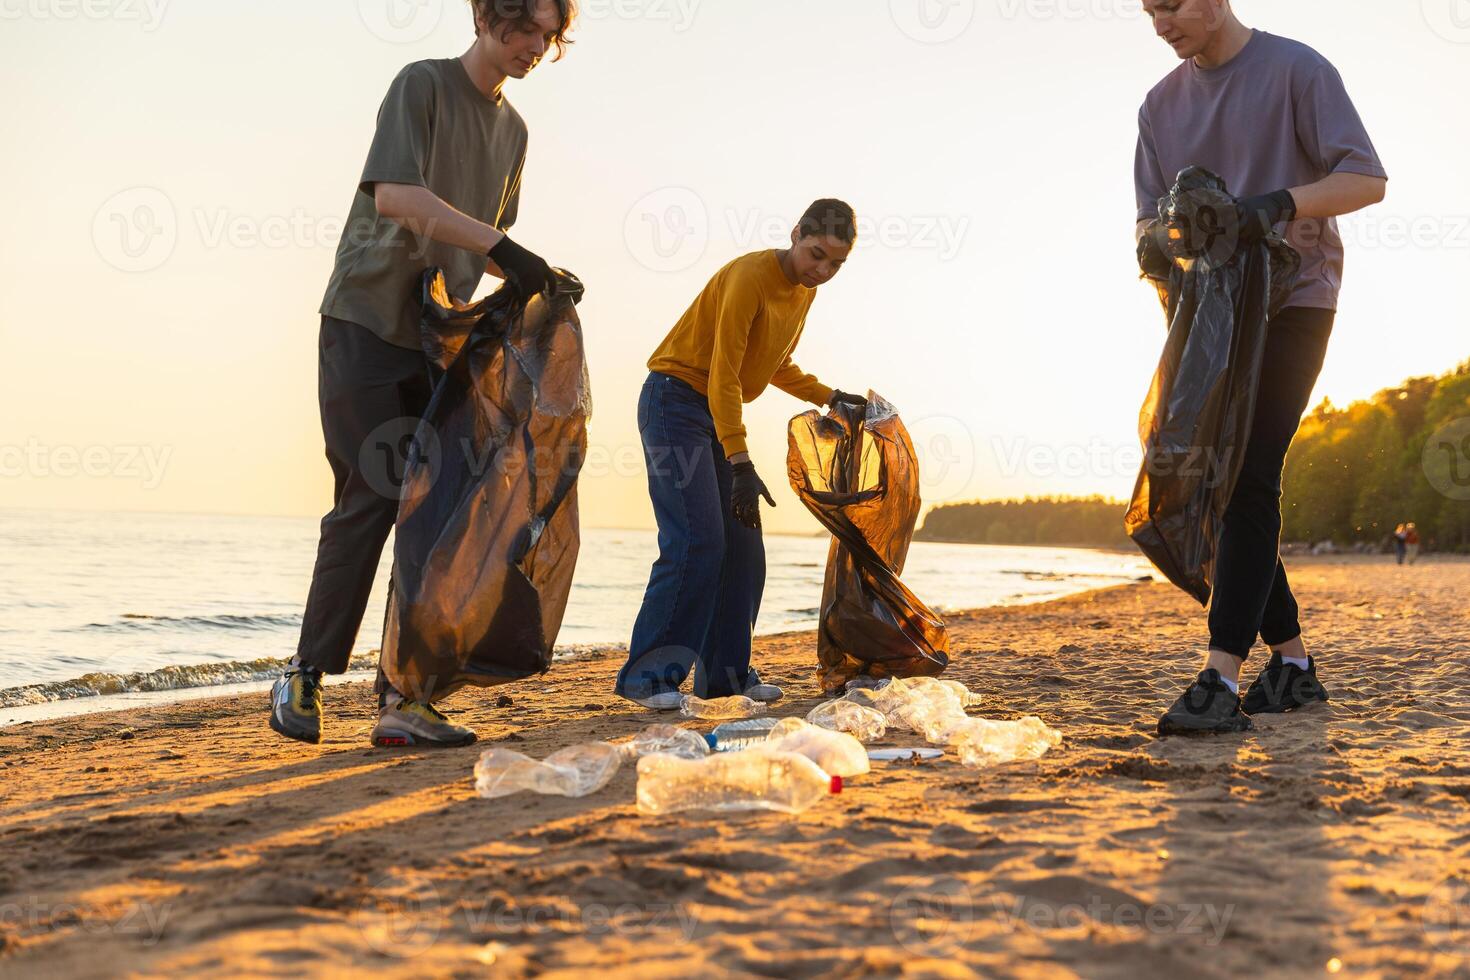 tierra día. voluntarios activistas recoge basura limpieza de playa costero zona. mujer y mans pone el plastico basura en basura bolso en Oceano costa. ambiental conservación costero zona limpieza foto